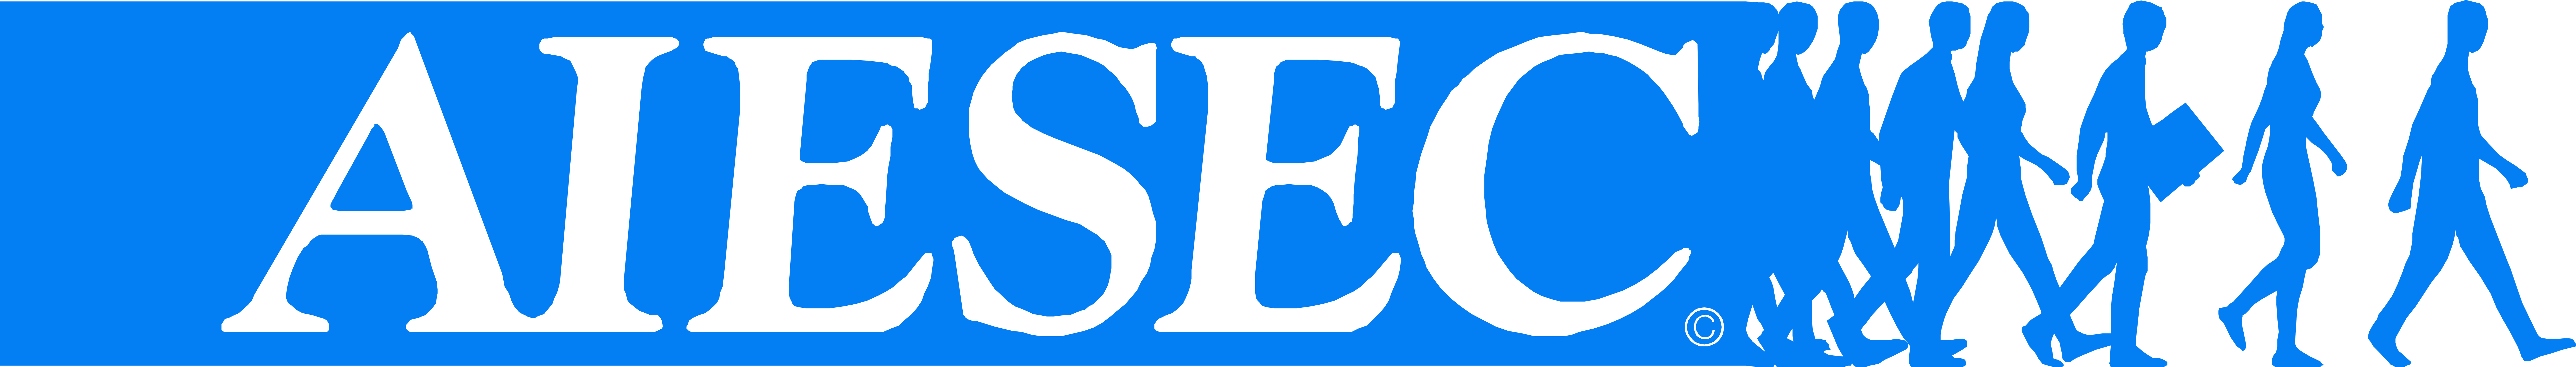 logo_Aiesec blue